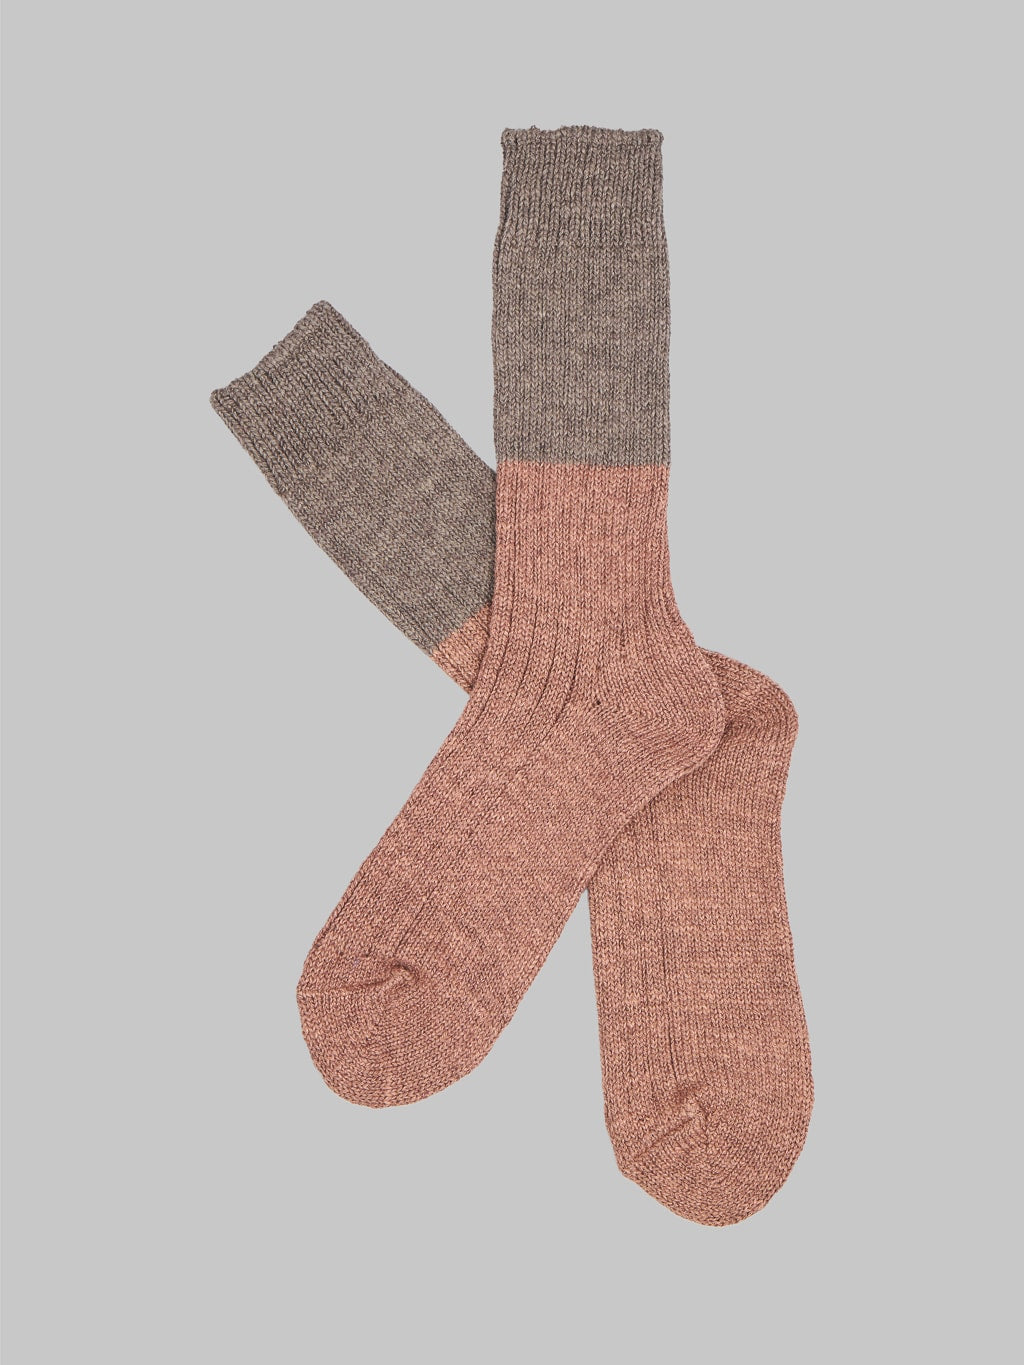 Nishiguchi Kutsushita Wool Cotton Slab Socks Brown Pair